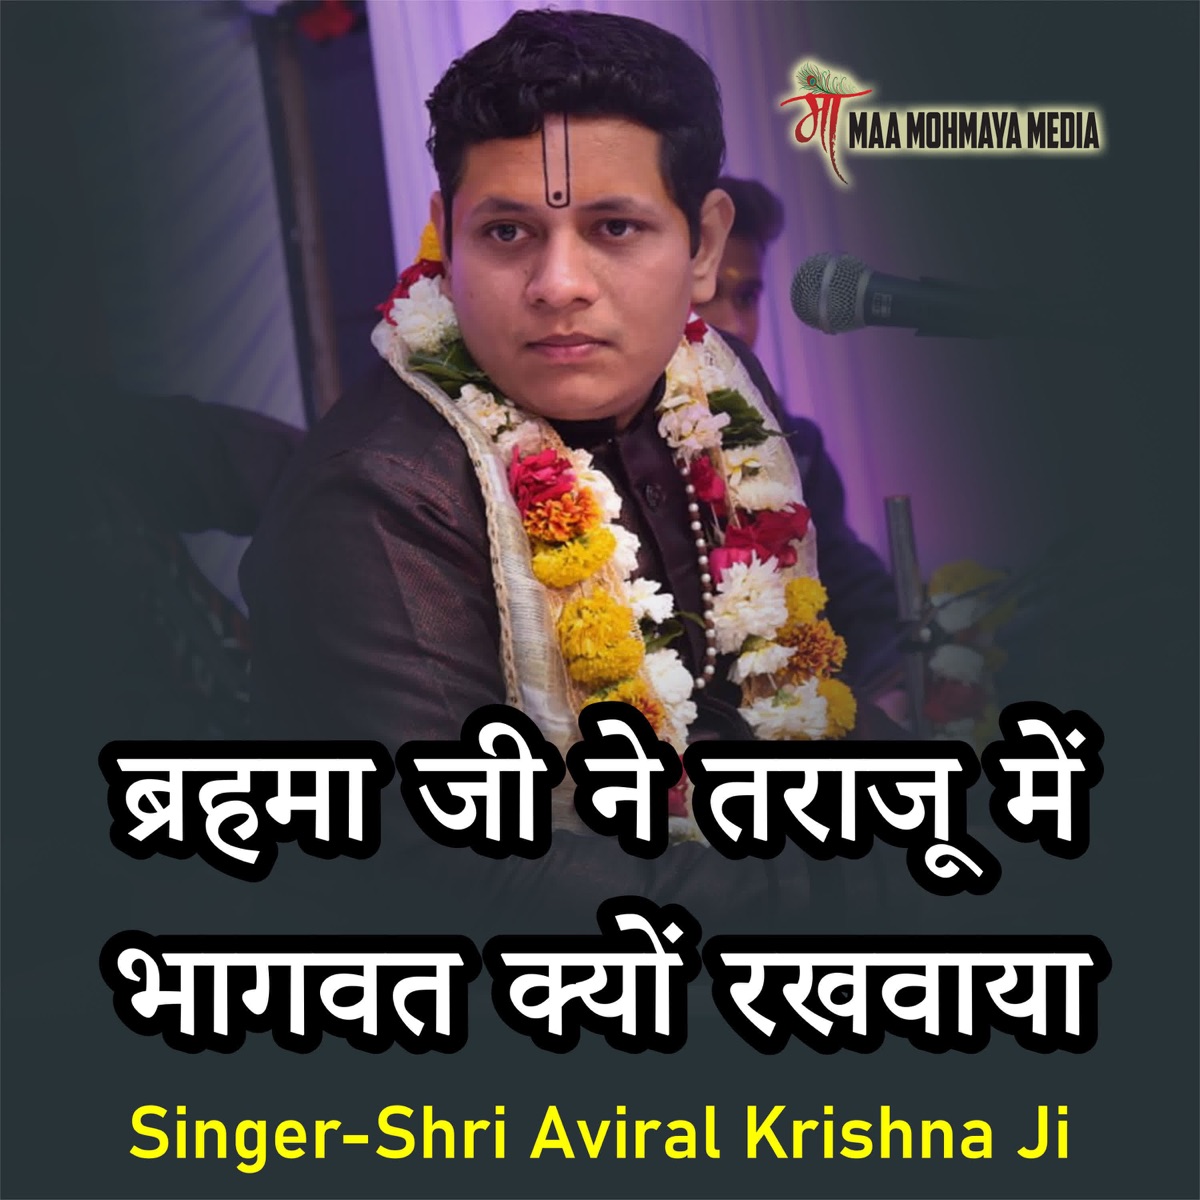 Satkarm Ka Swaroop Kaisa Hai - EP by Shri Aviral Krishna Ji on Apple Music